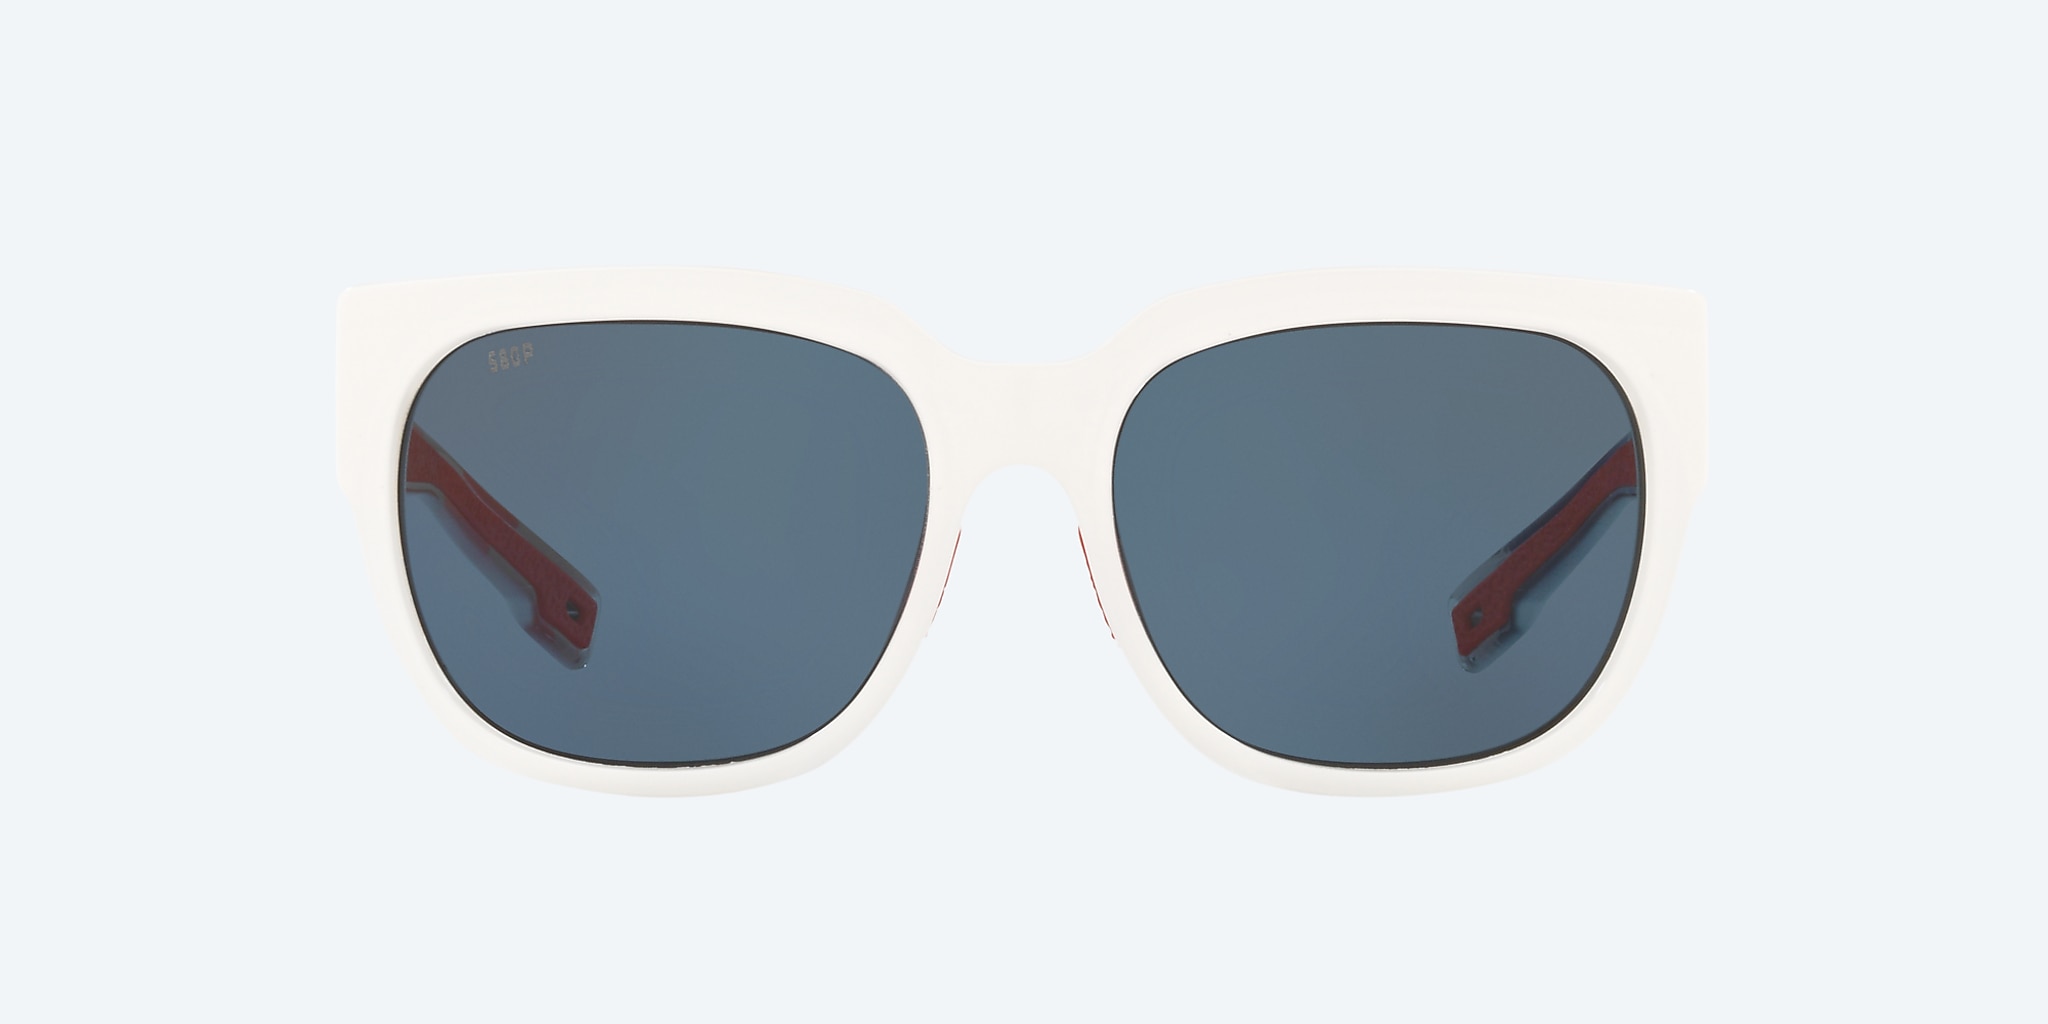 Louis Vuitton Outerspace Sunglasses, Black